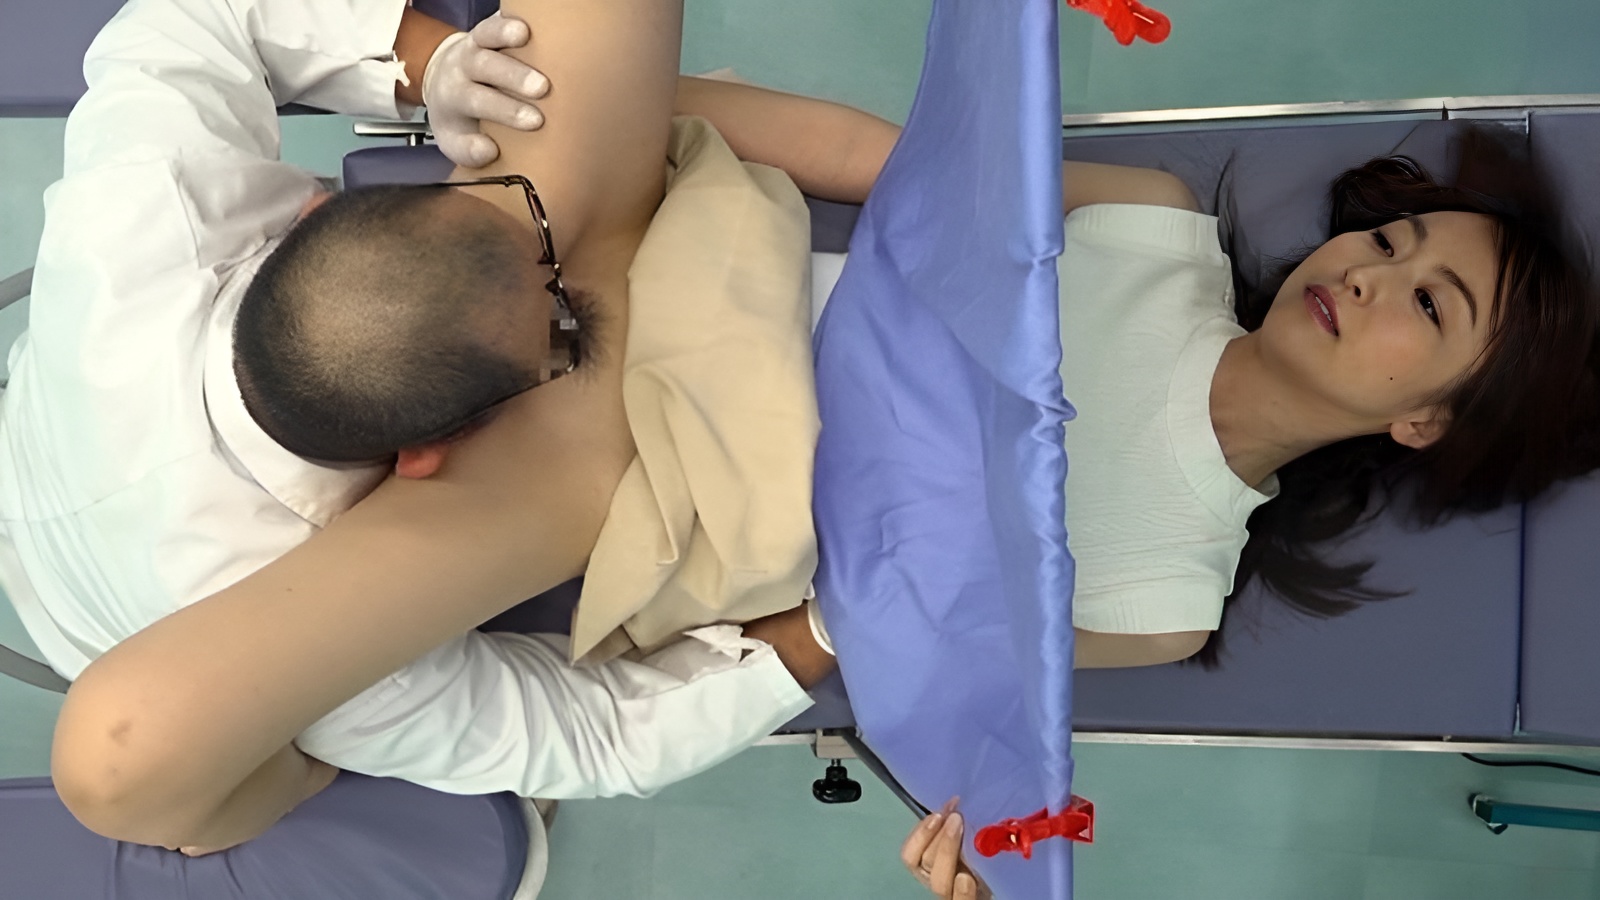 UMD-754 Il ginecologo pervertito adora succhiare le fighe dei pazienti